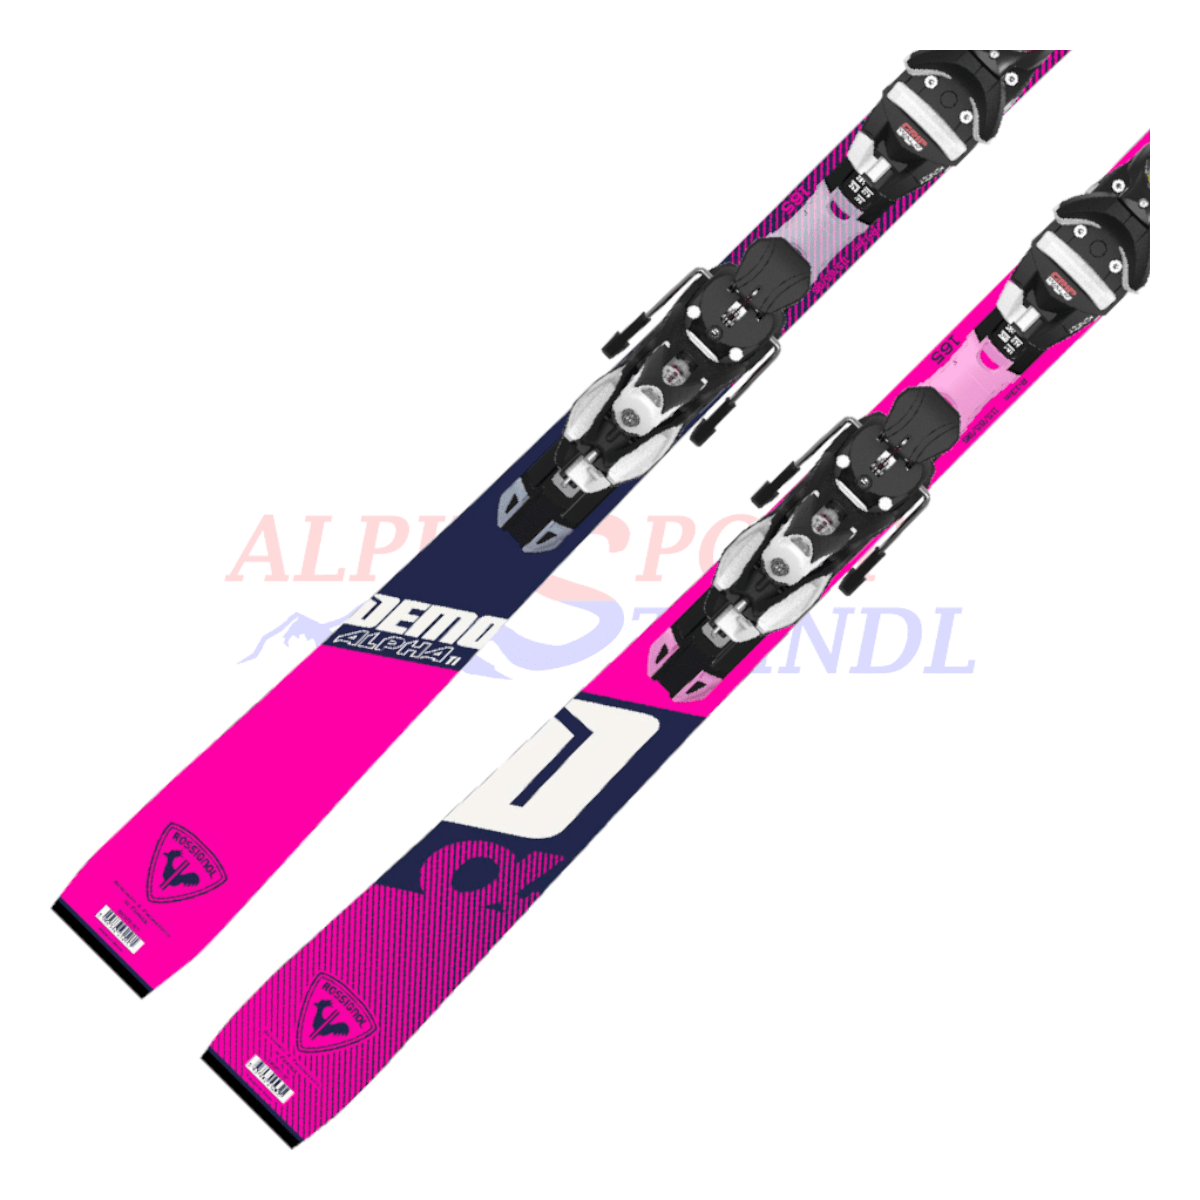 Rossignol Demo Alpha TI aus dem Jahre 2022/23 in der Farbe Pink, Ansicht des unteren Teils des Skis